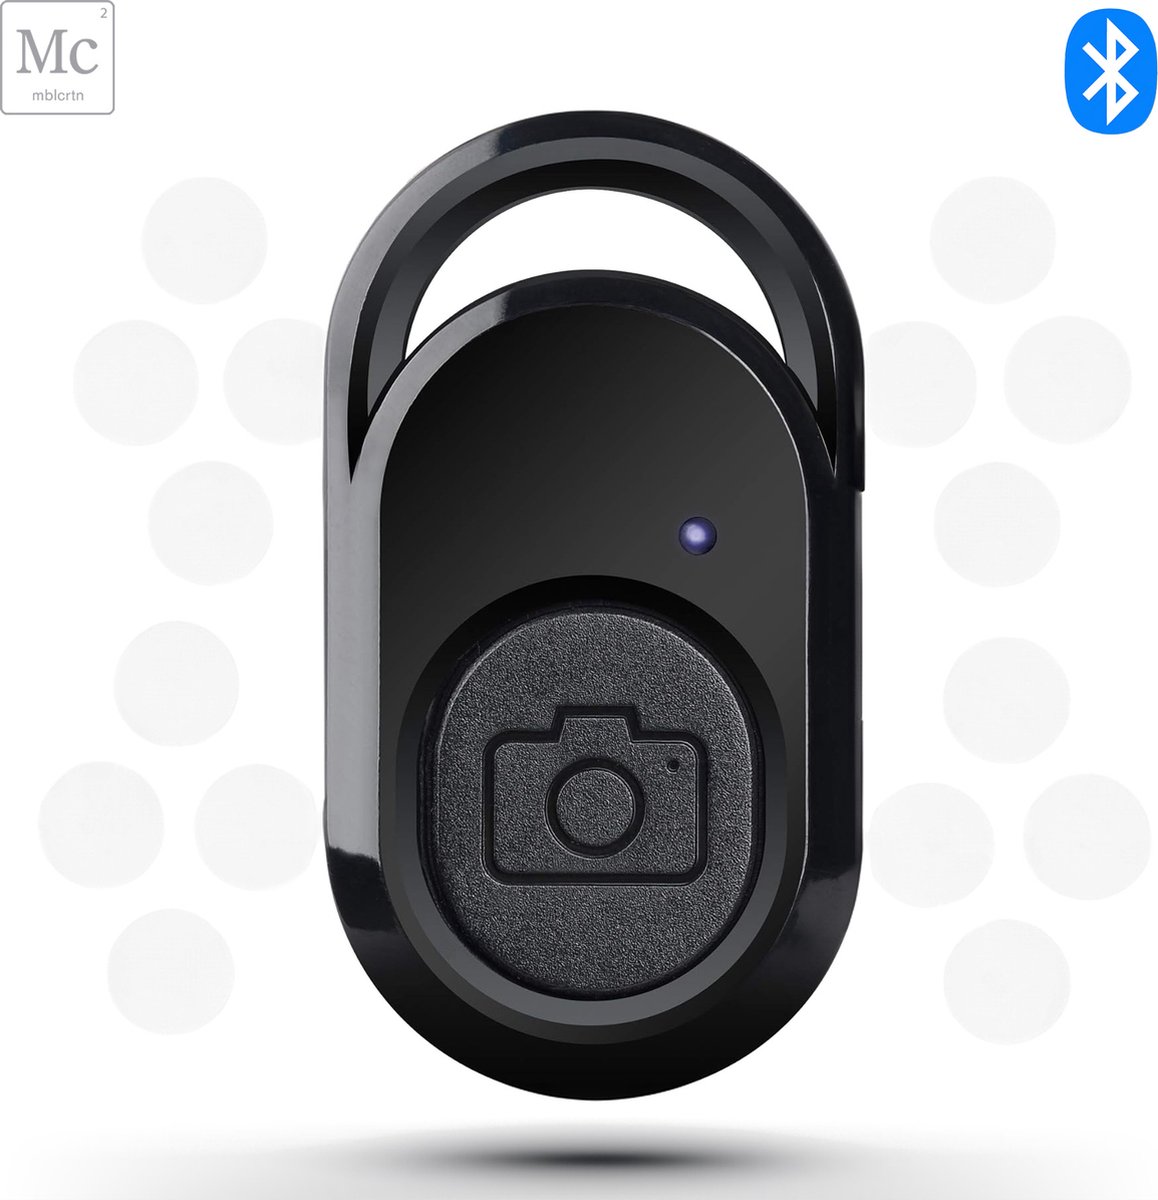 Bluetooth Afstandsbediening - Selfie-knop - Remote Shutter - Foto-neem-knop - Voor Fotografie en Videografie - Geschikt voor iOS en Android - Mobiel en Tablet - Komt in Handig Bewaaretuitje - Inclusief schoonmaakdoekje - Gratis Verzending in NL - MobileCreation